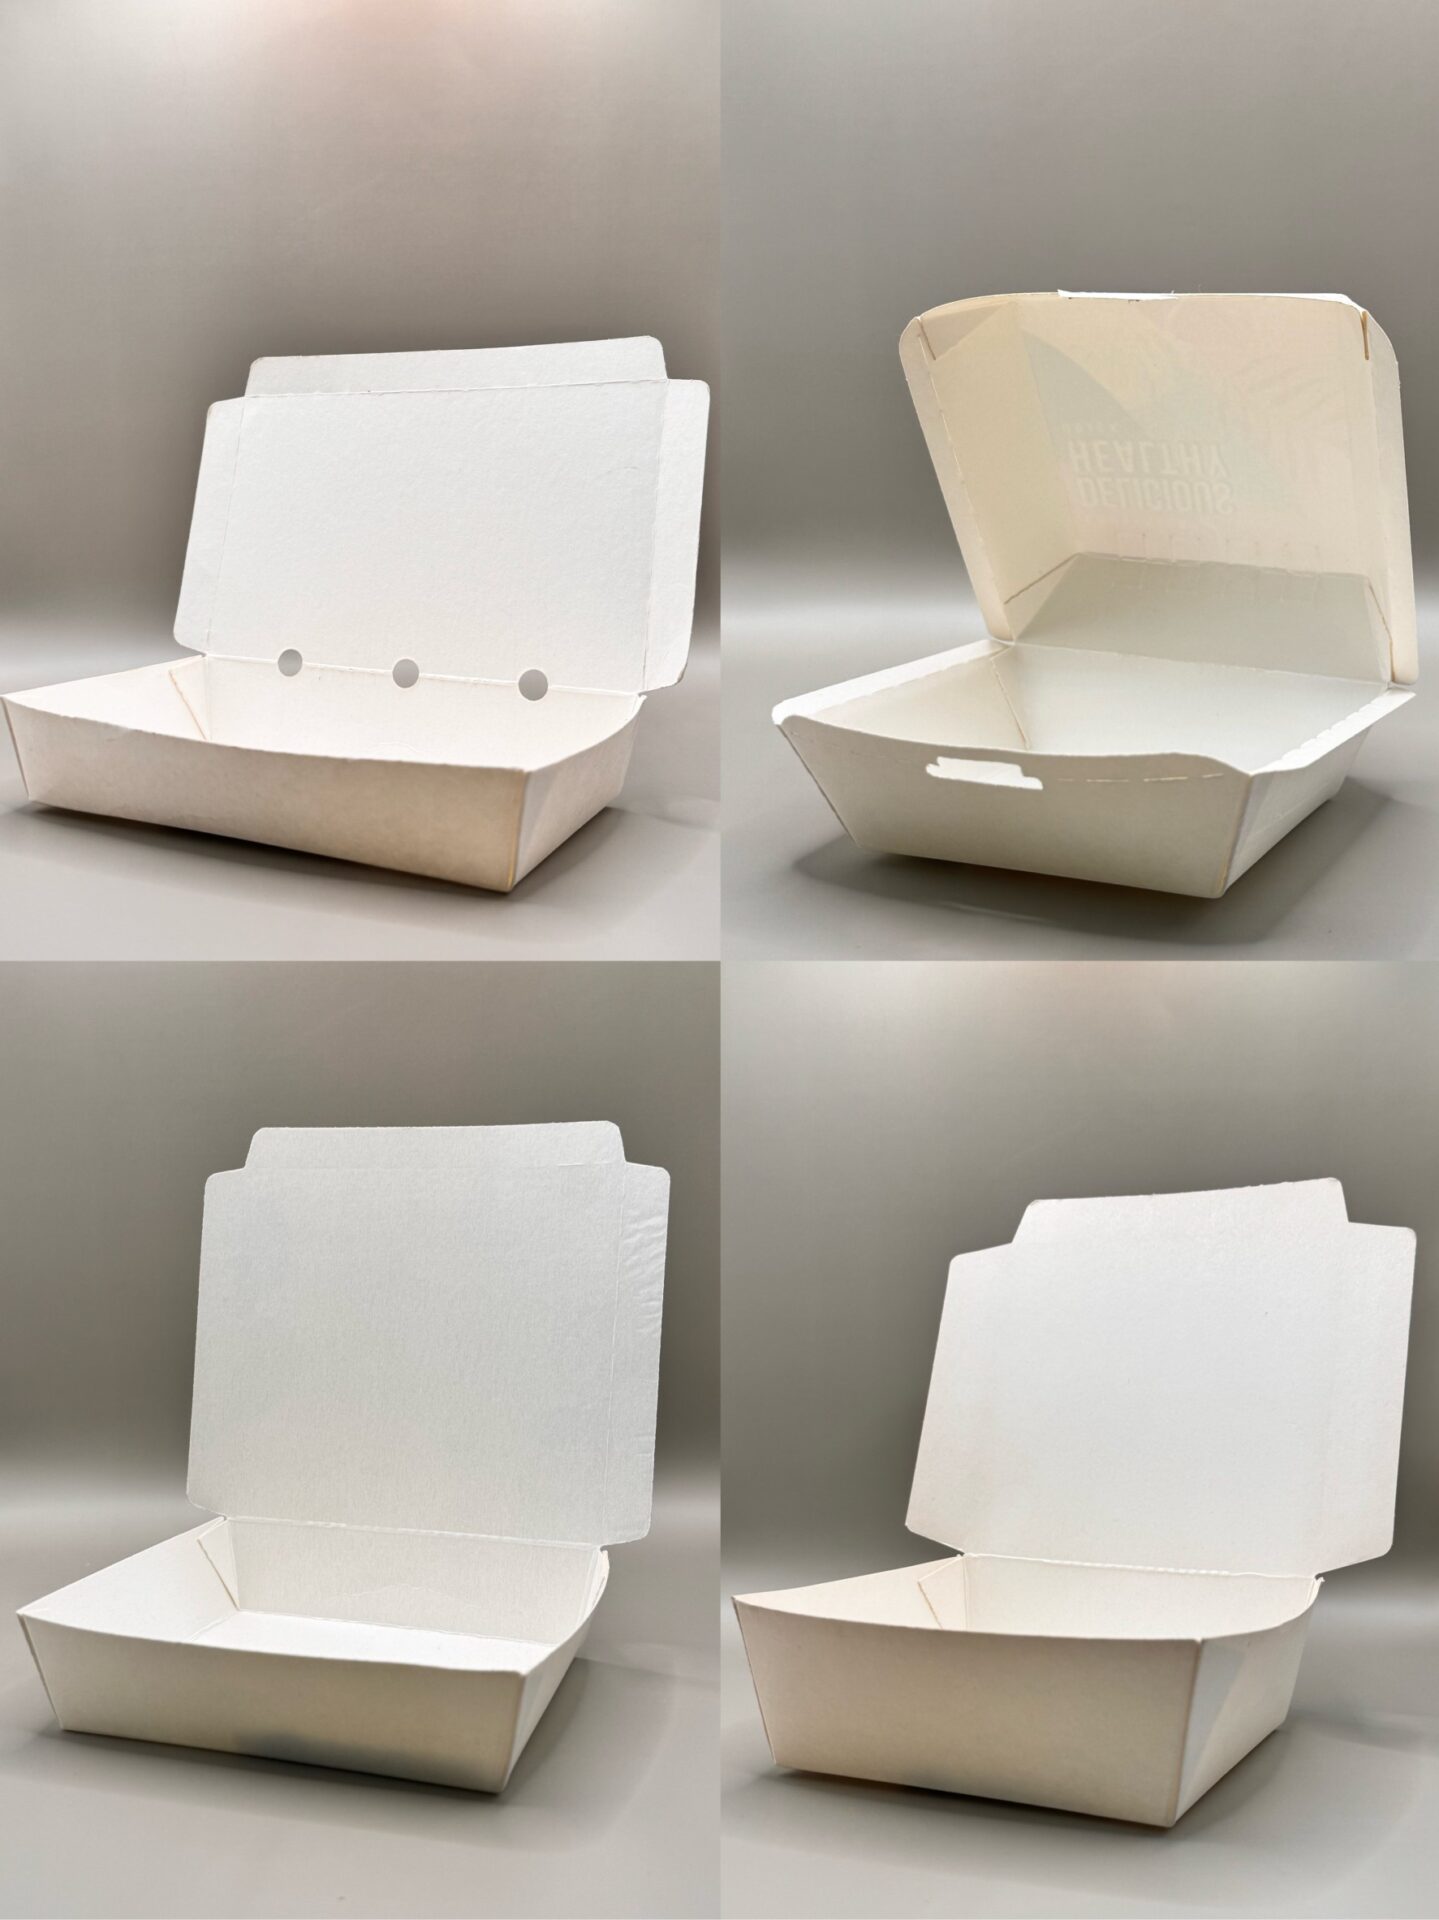 獨家專利設計打孔餐盒<br>包材限定優惠